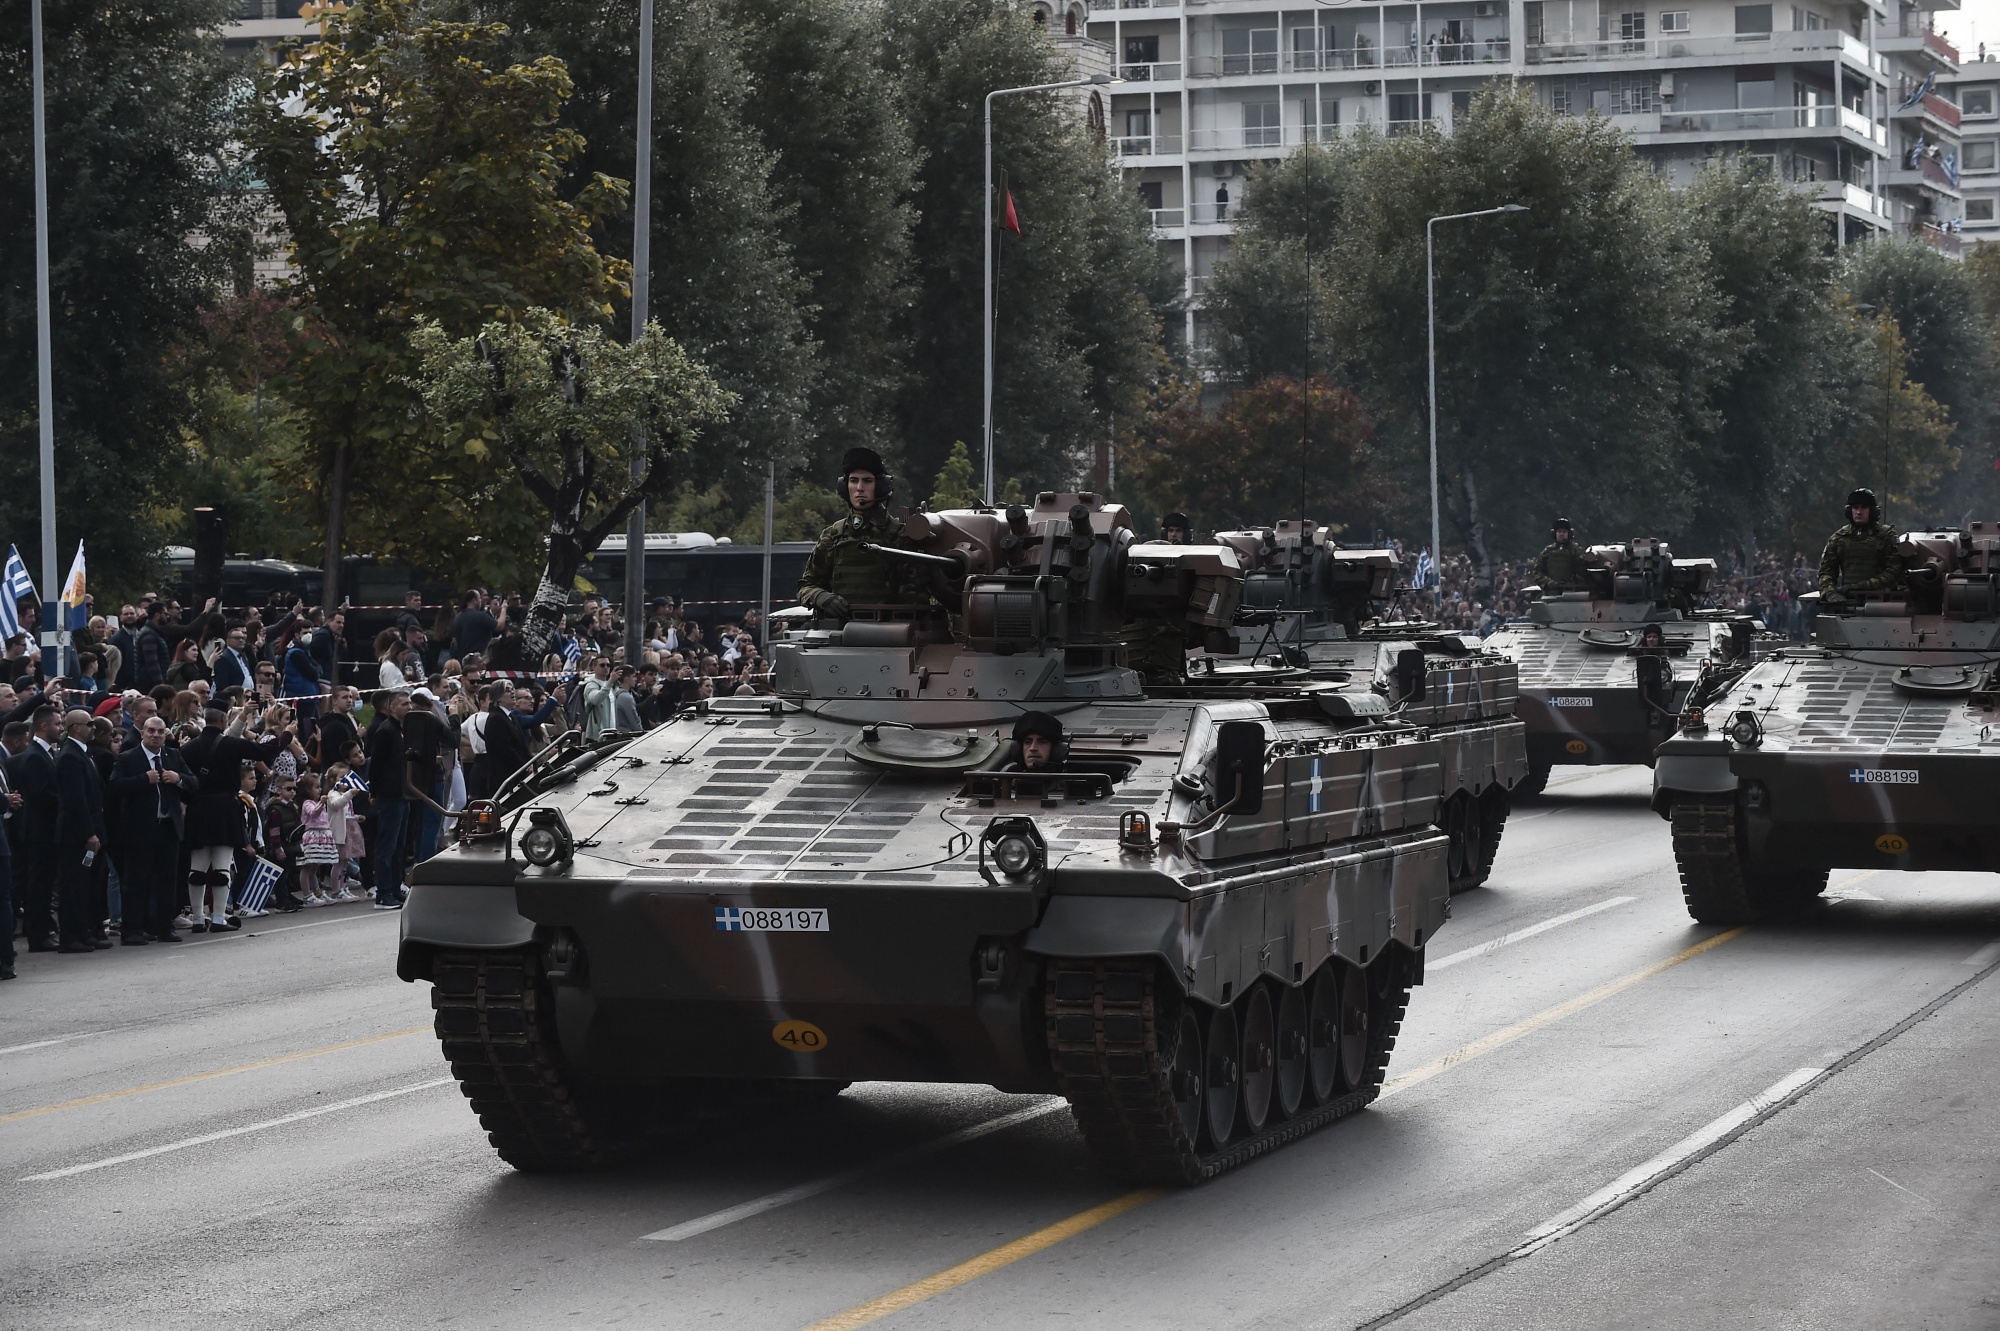 Rheinmetall to Supply 40 More Marder Infantry Fighting Vehicles to Ukraine